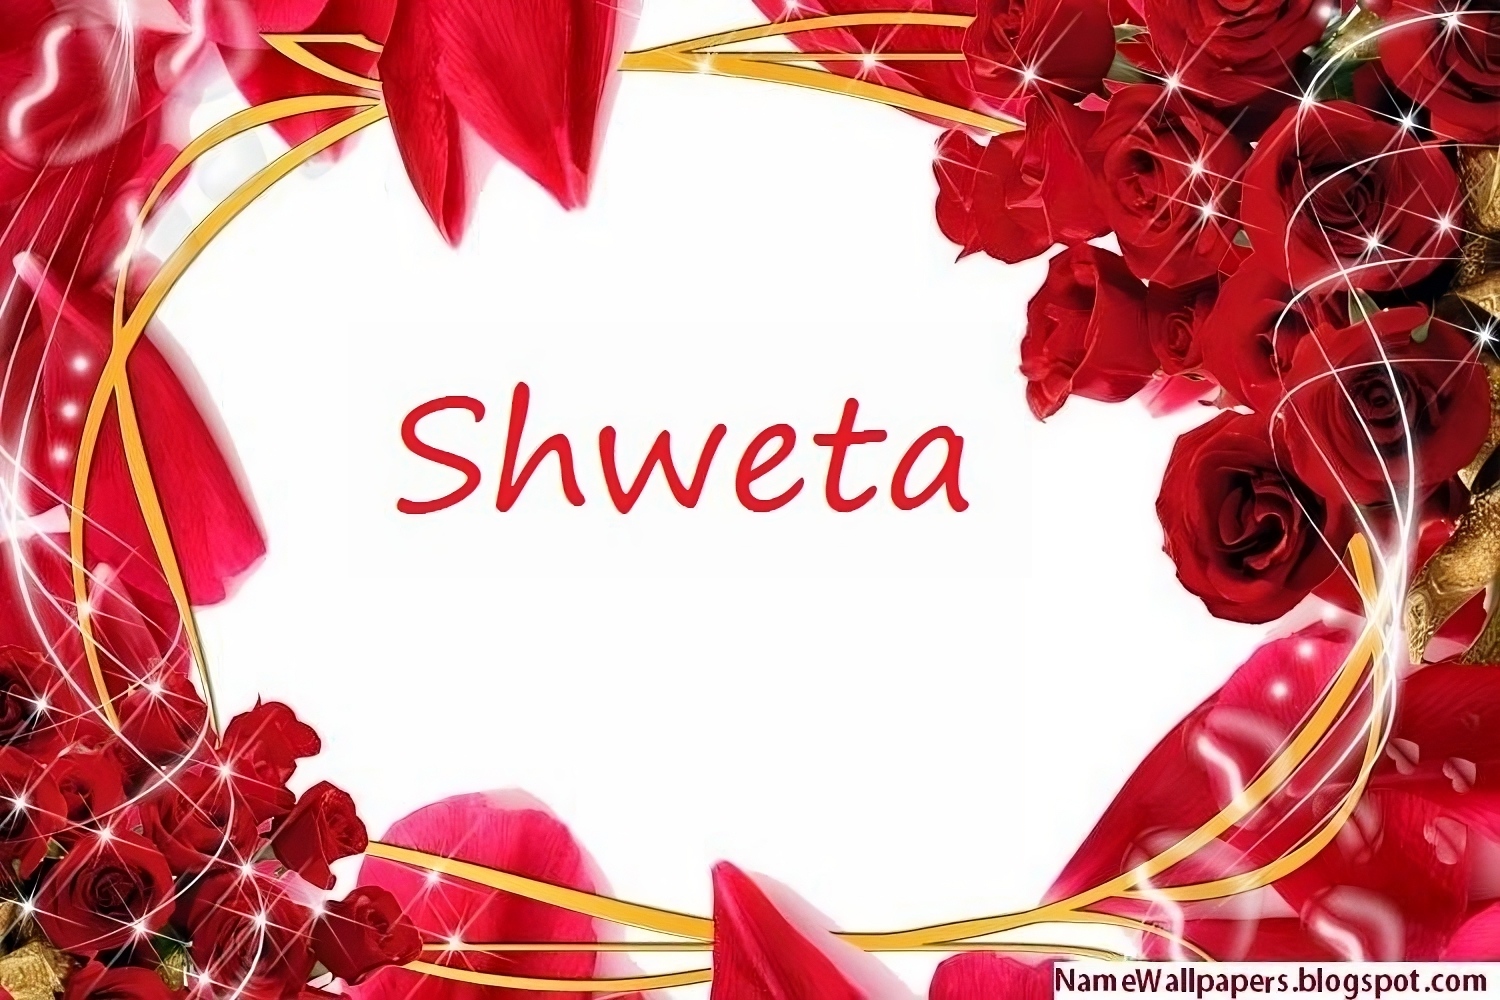 Shweta Name - rose